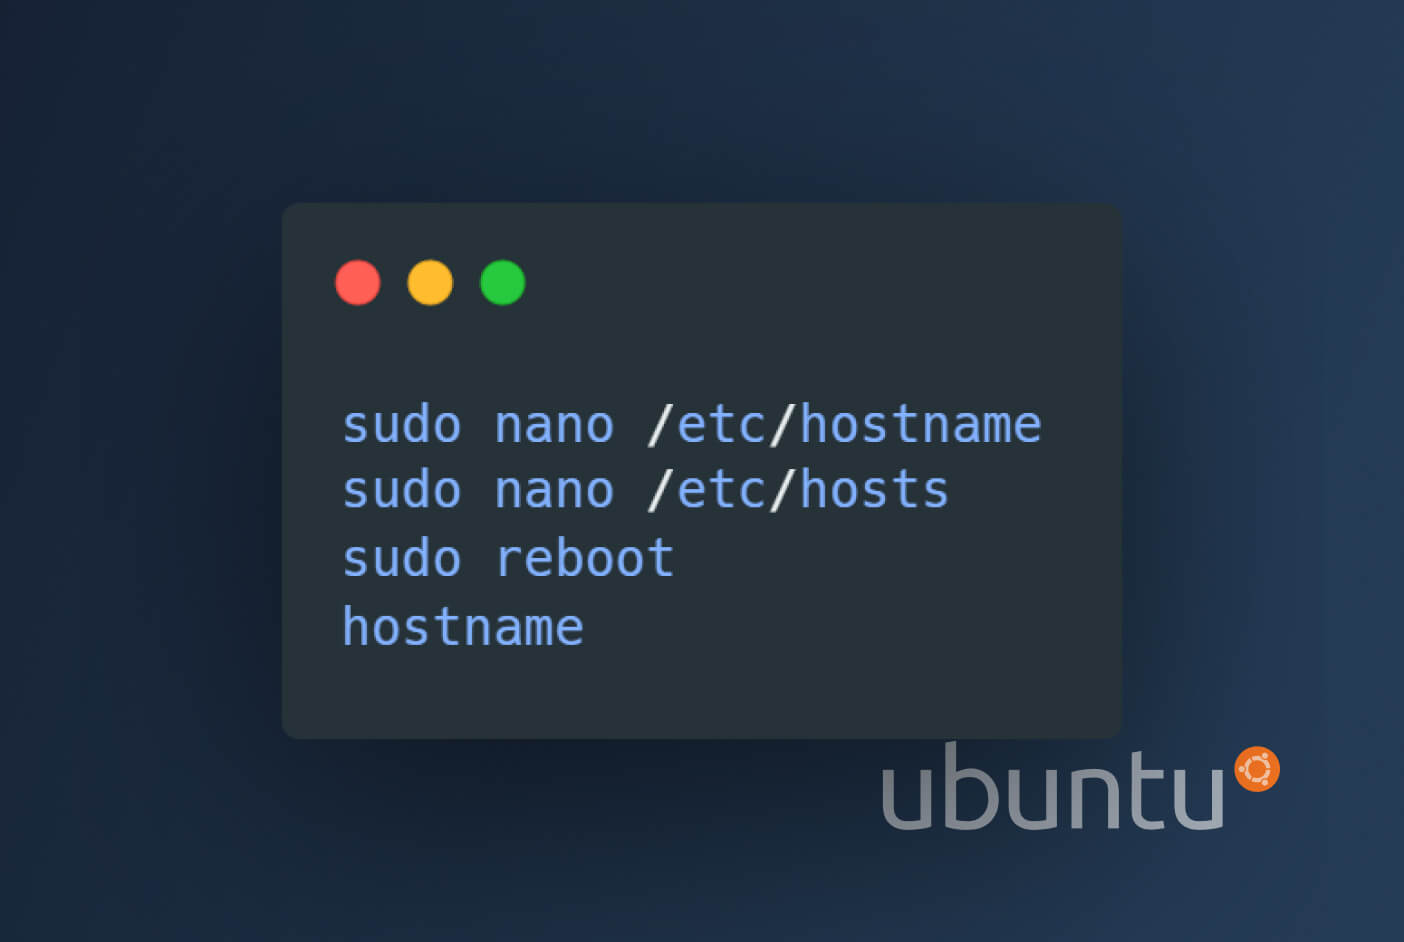 ubuntu change hostname